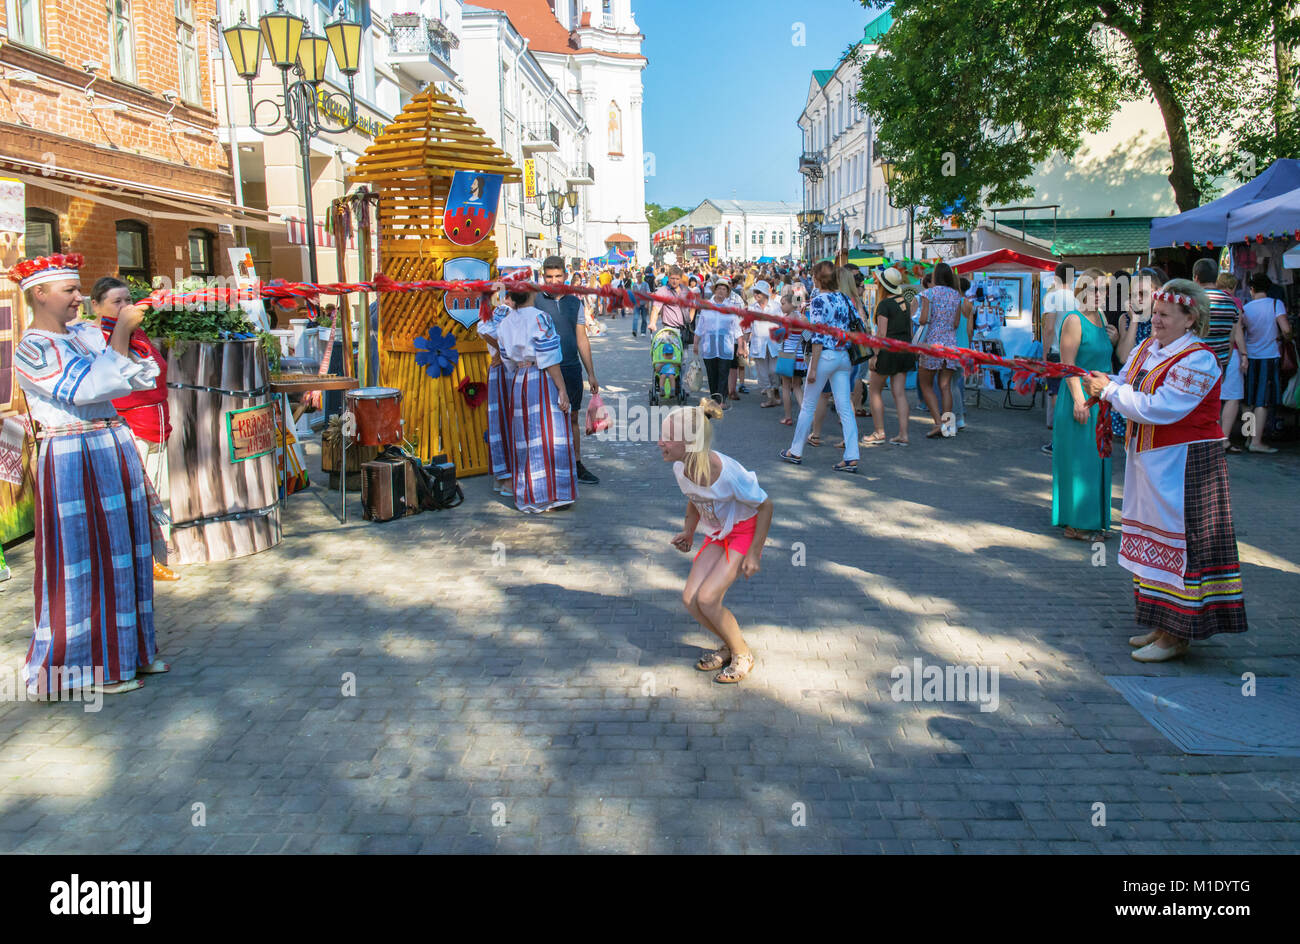 Festival international des arts "Slavianski bazar à Vitebsk - 2016 ". Rue de la ville des festivals. Banque D'Images